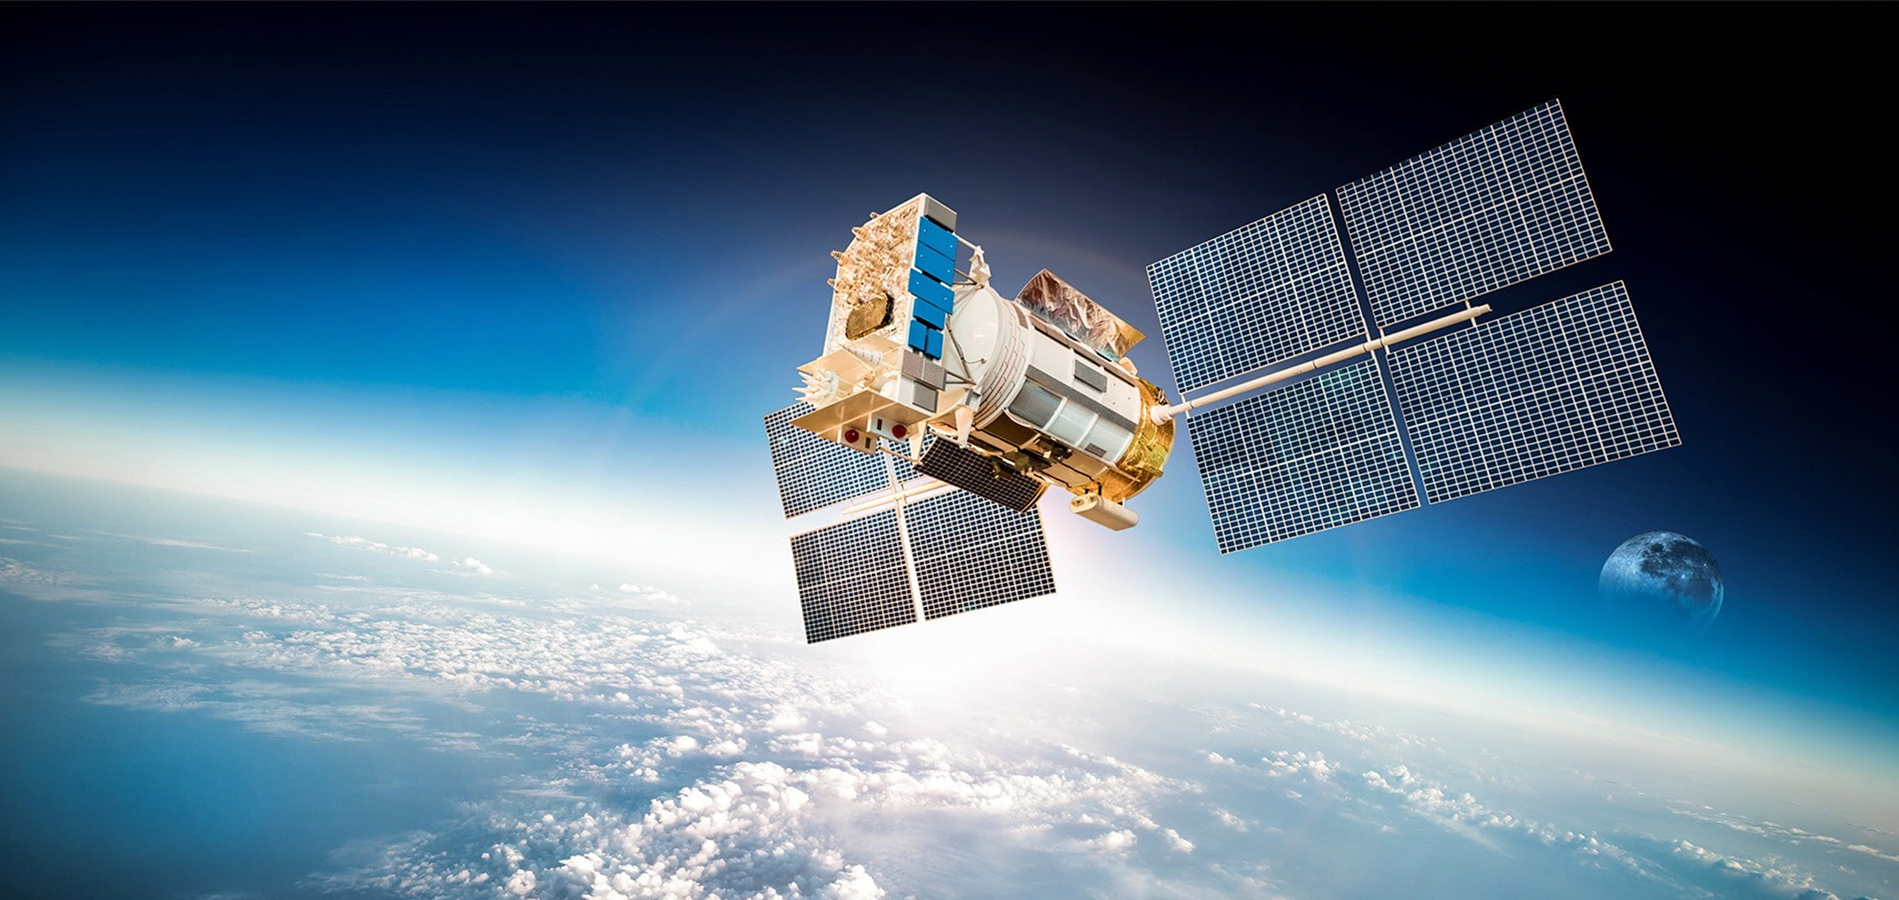 A imagem de um satélite em órbita fazendo referência a captação de dados geográficos.